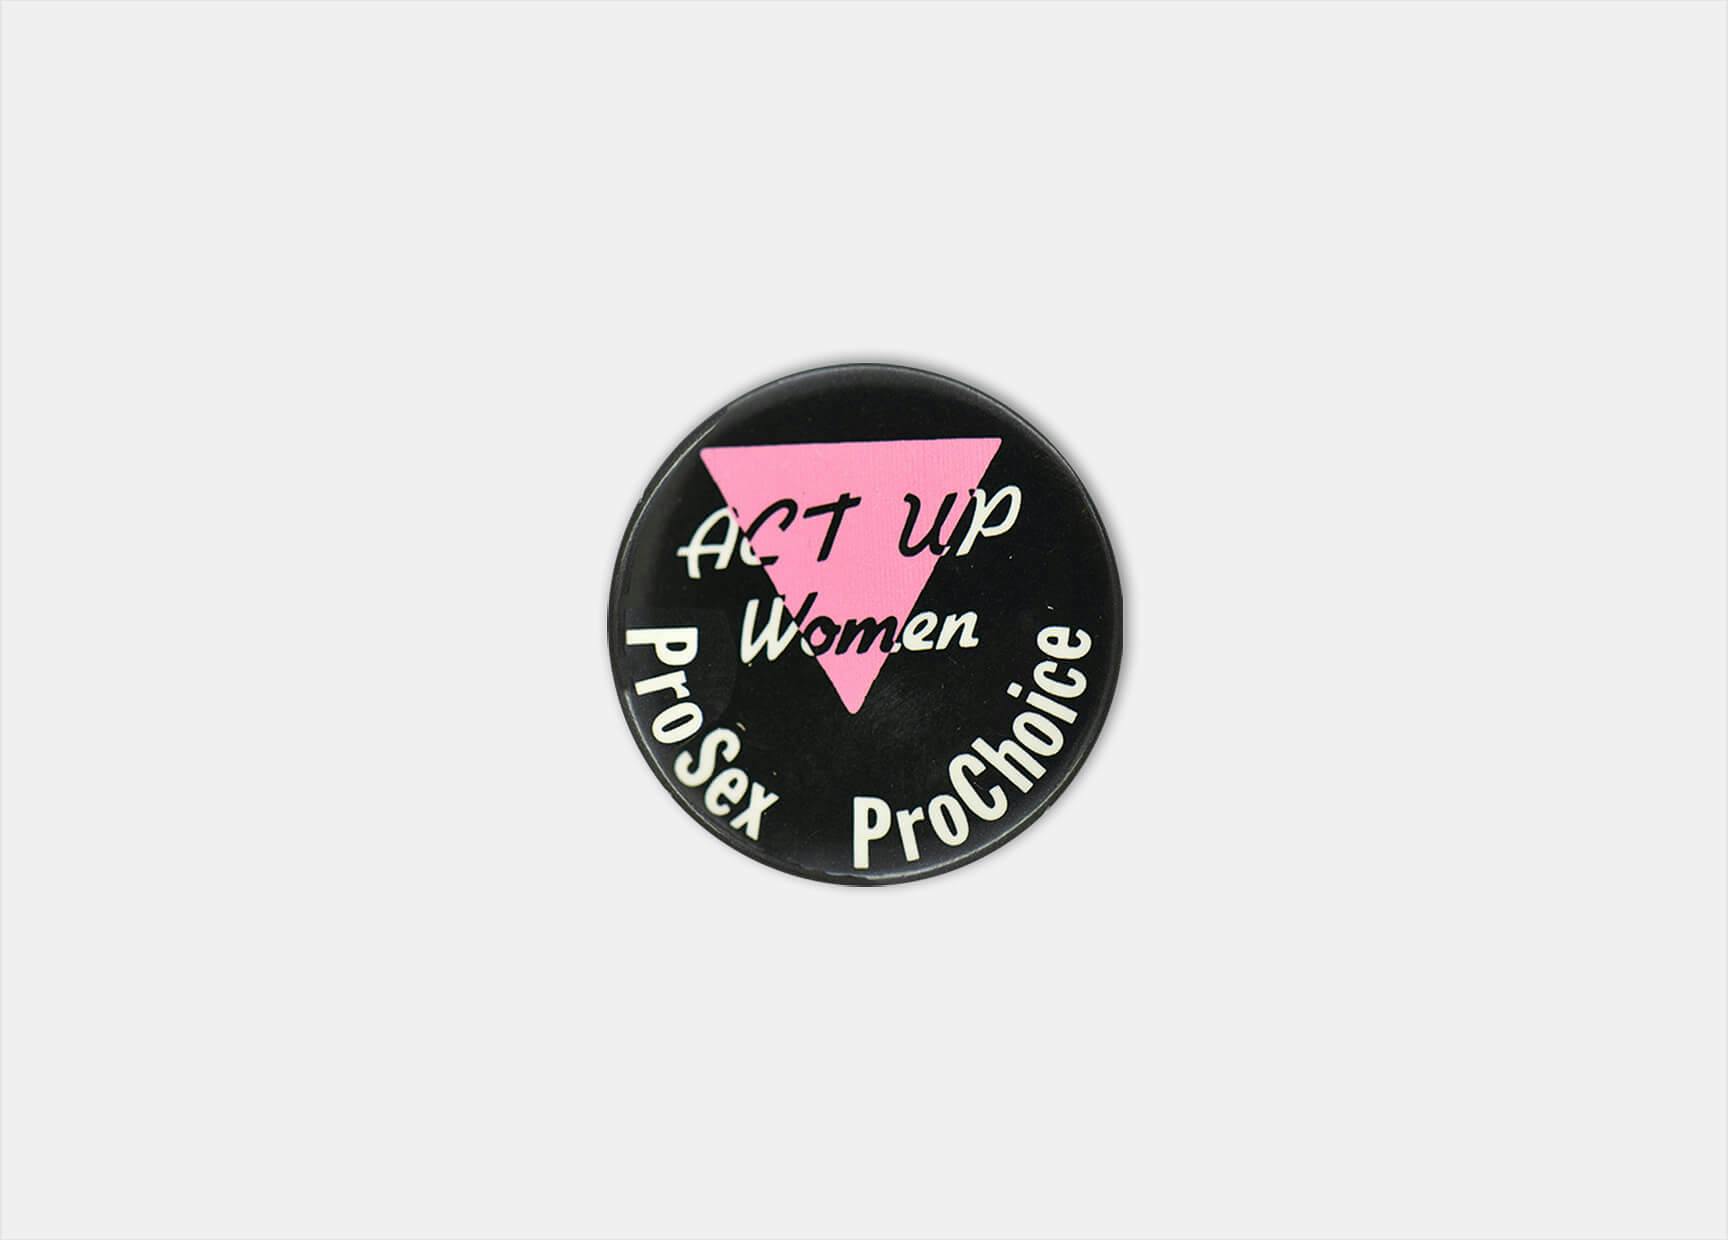 Button “Act Up Women. ProSex ProChoice” [Laat van je horen vrouwen. ProSex ProKeuze] van groep Act Up Women, 1988, ontwerp: onbekend. Bron: IHLIA LGBTI Heritage 